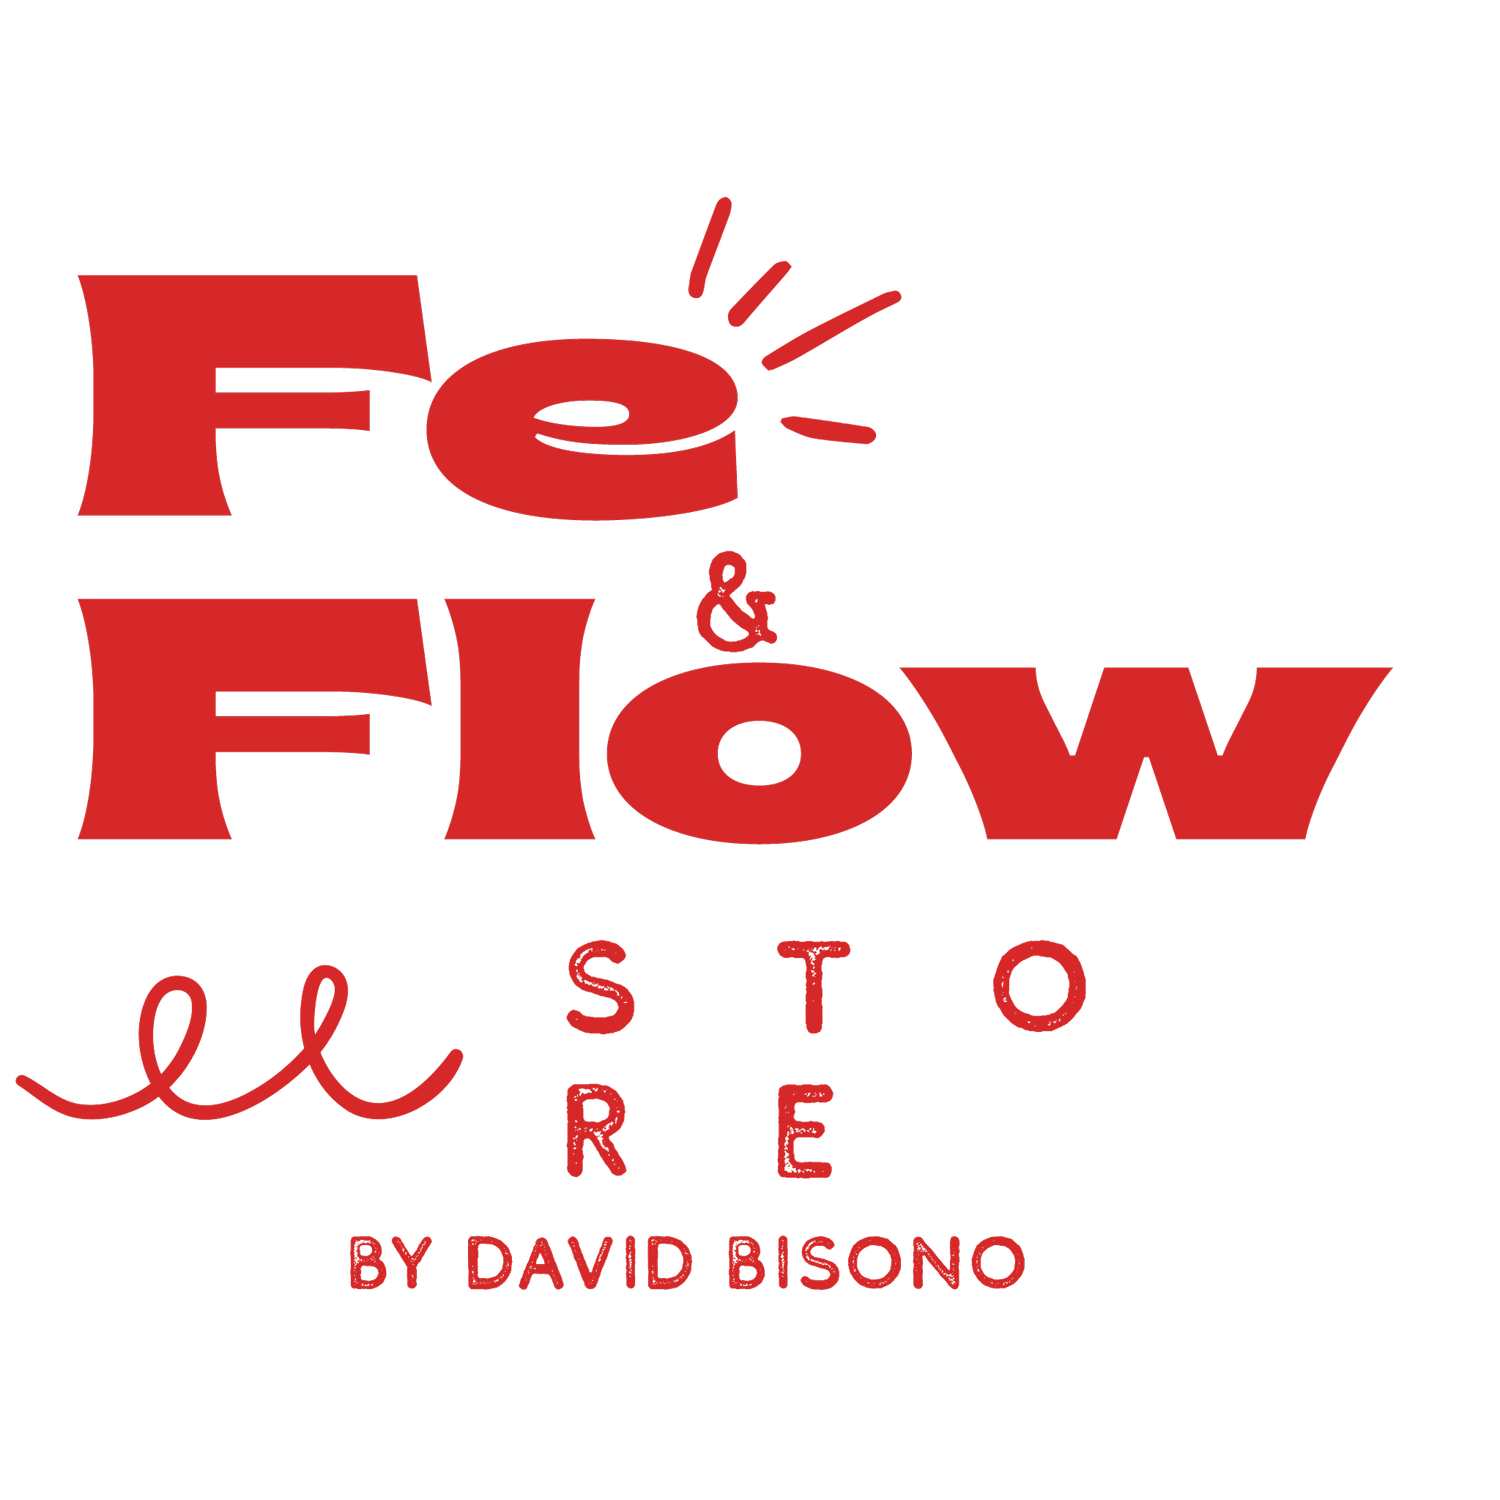 Fe y Flow Store